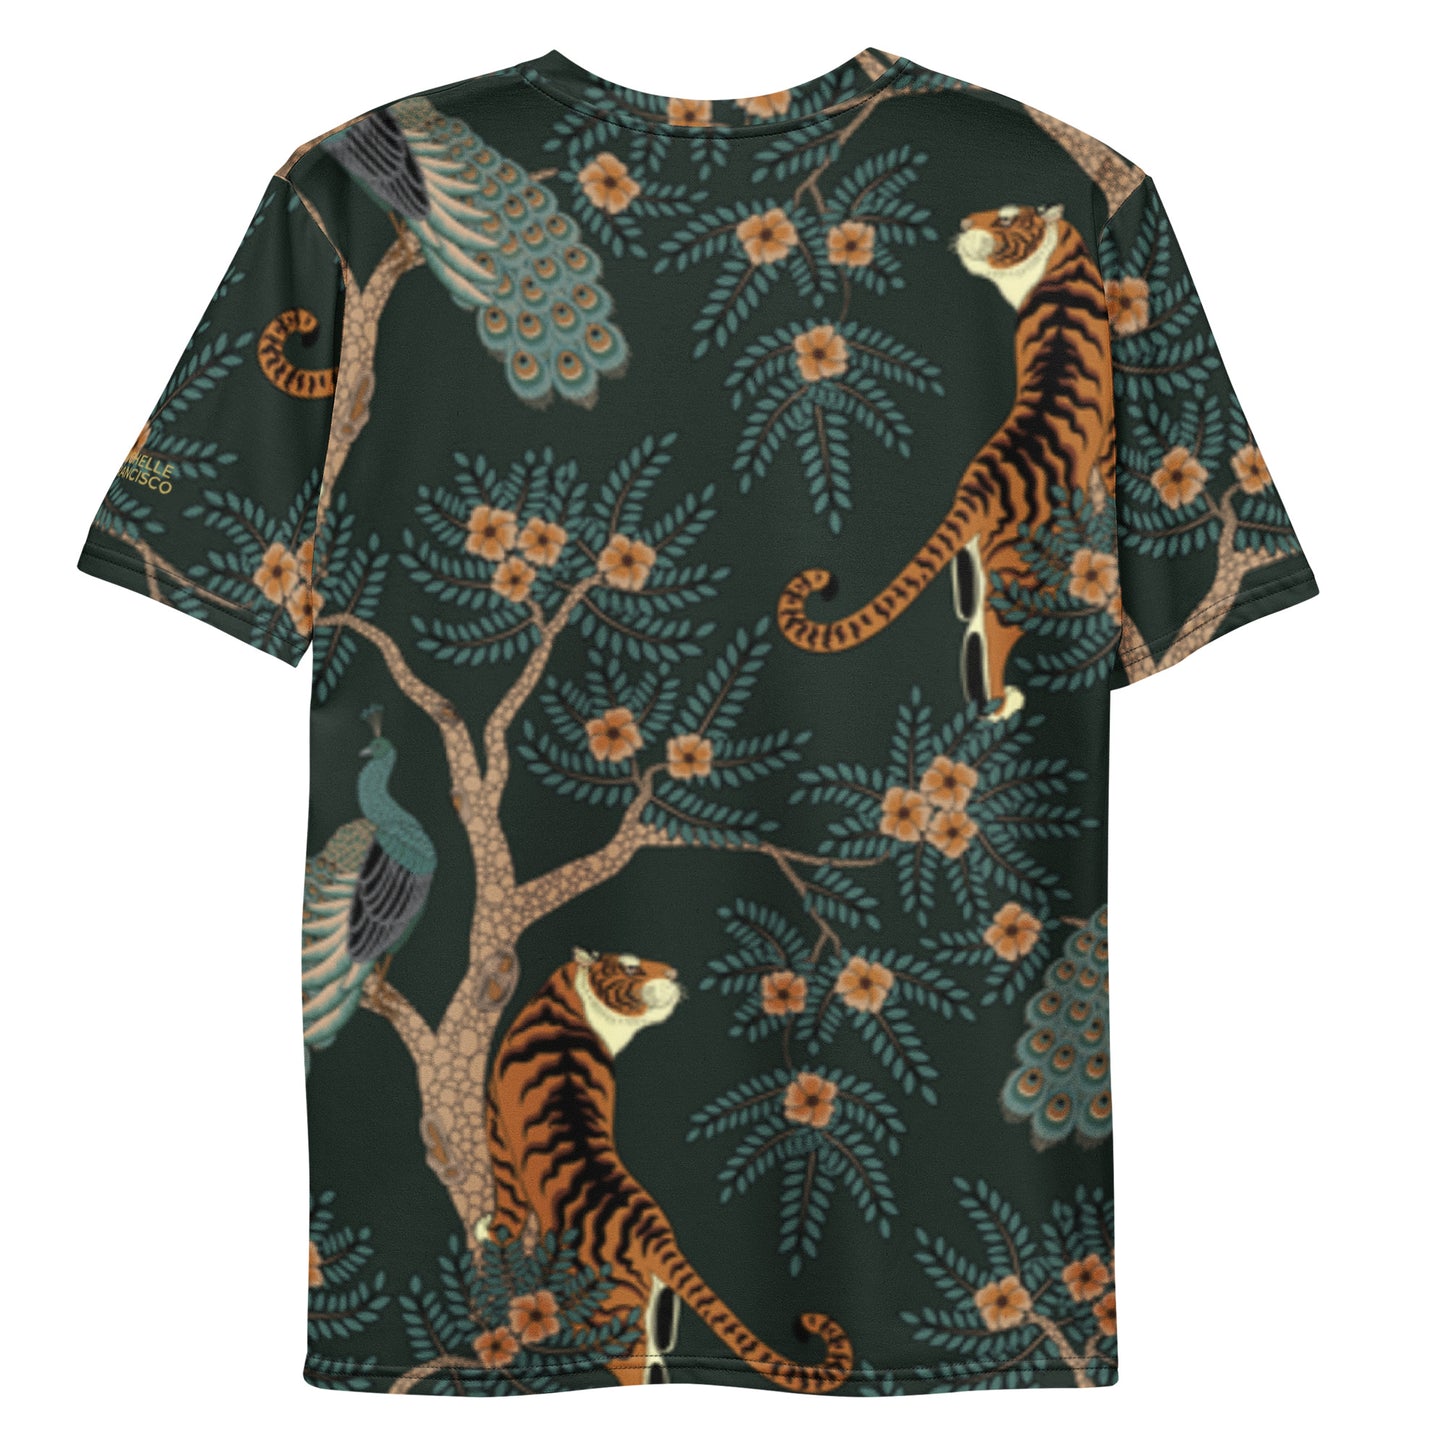 Men's Jungle T-shirt